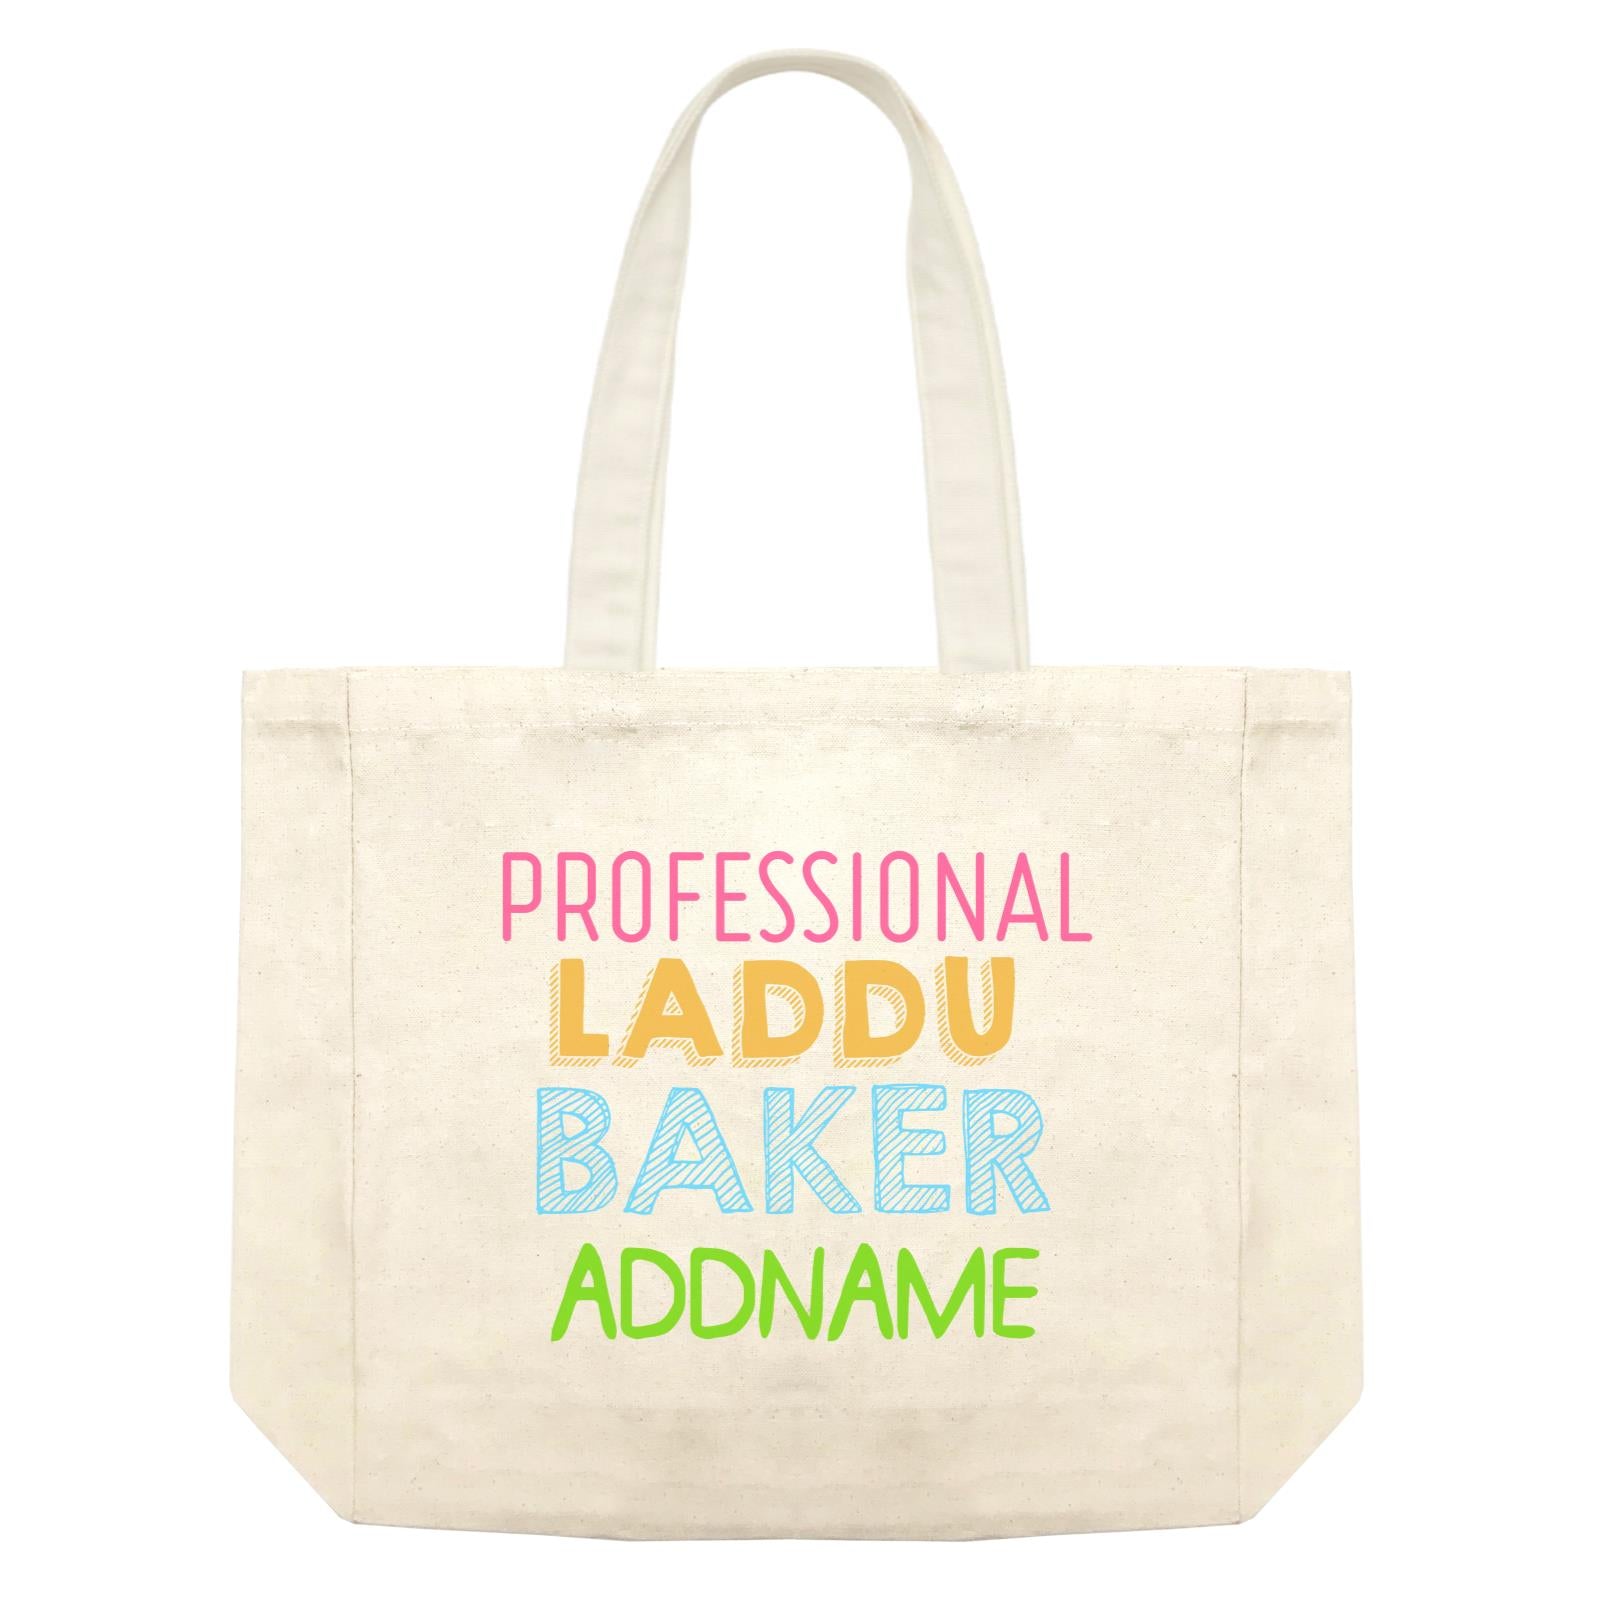 Professional Laddu Baker Addname Shopping Bag